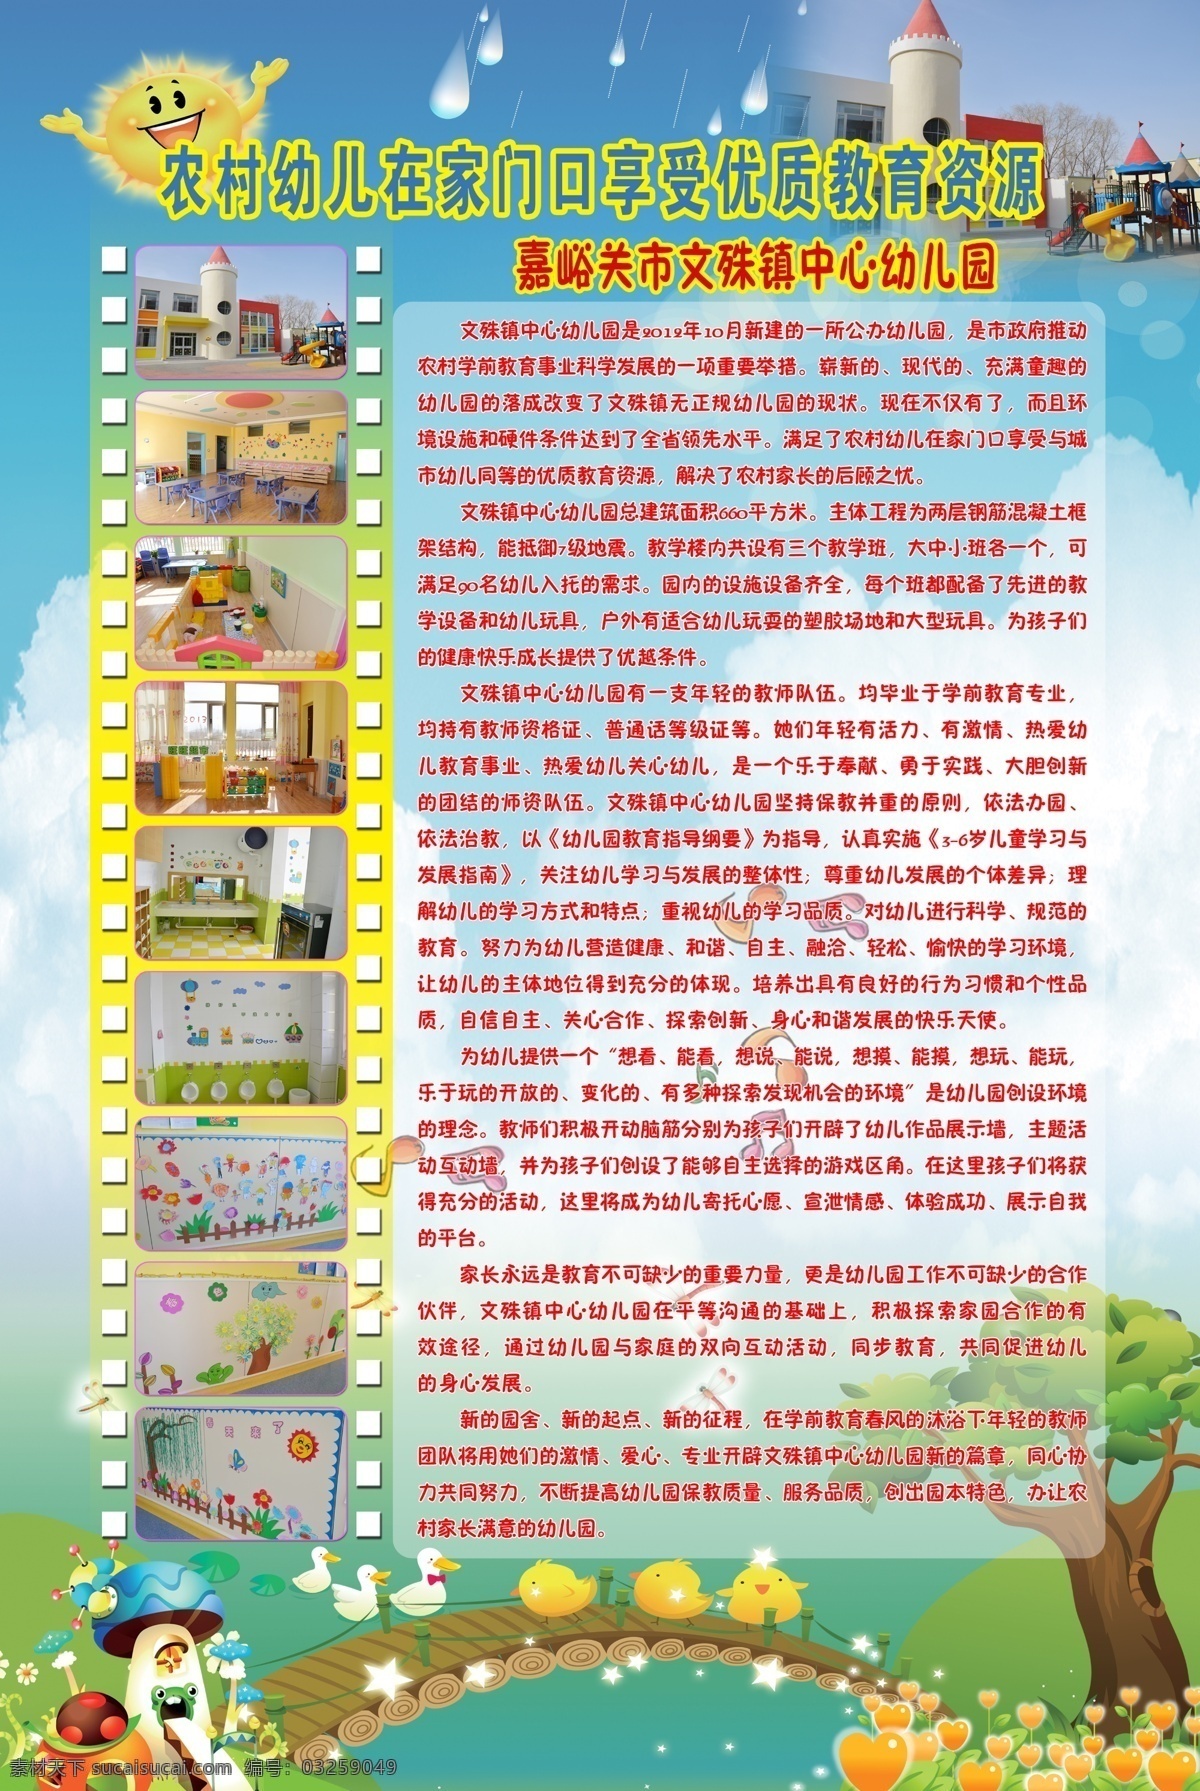 幼儿园 简介 内容 儿童展板 幼儿园展板 幼儿园简介 幼儿园介绍 照片展板 展板模板 广告设计模板 源文件